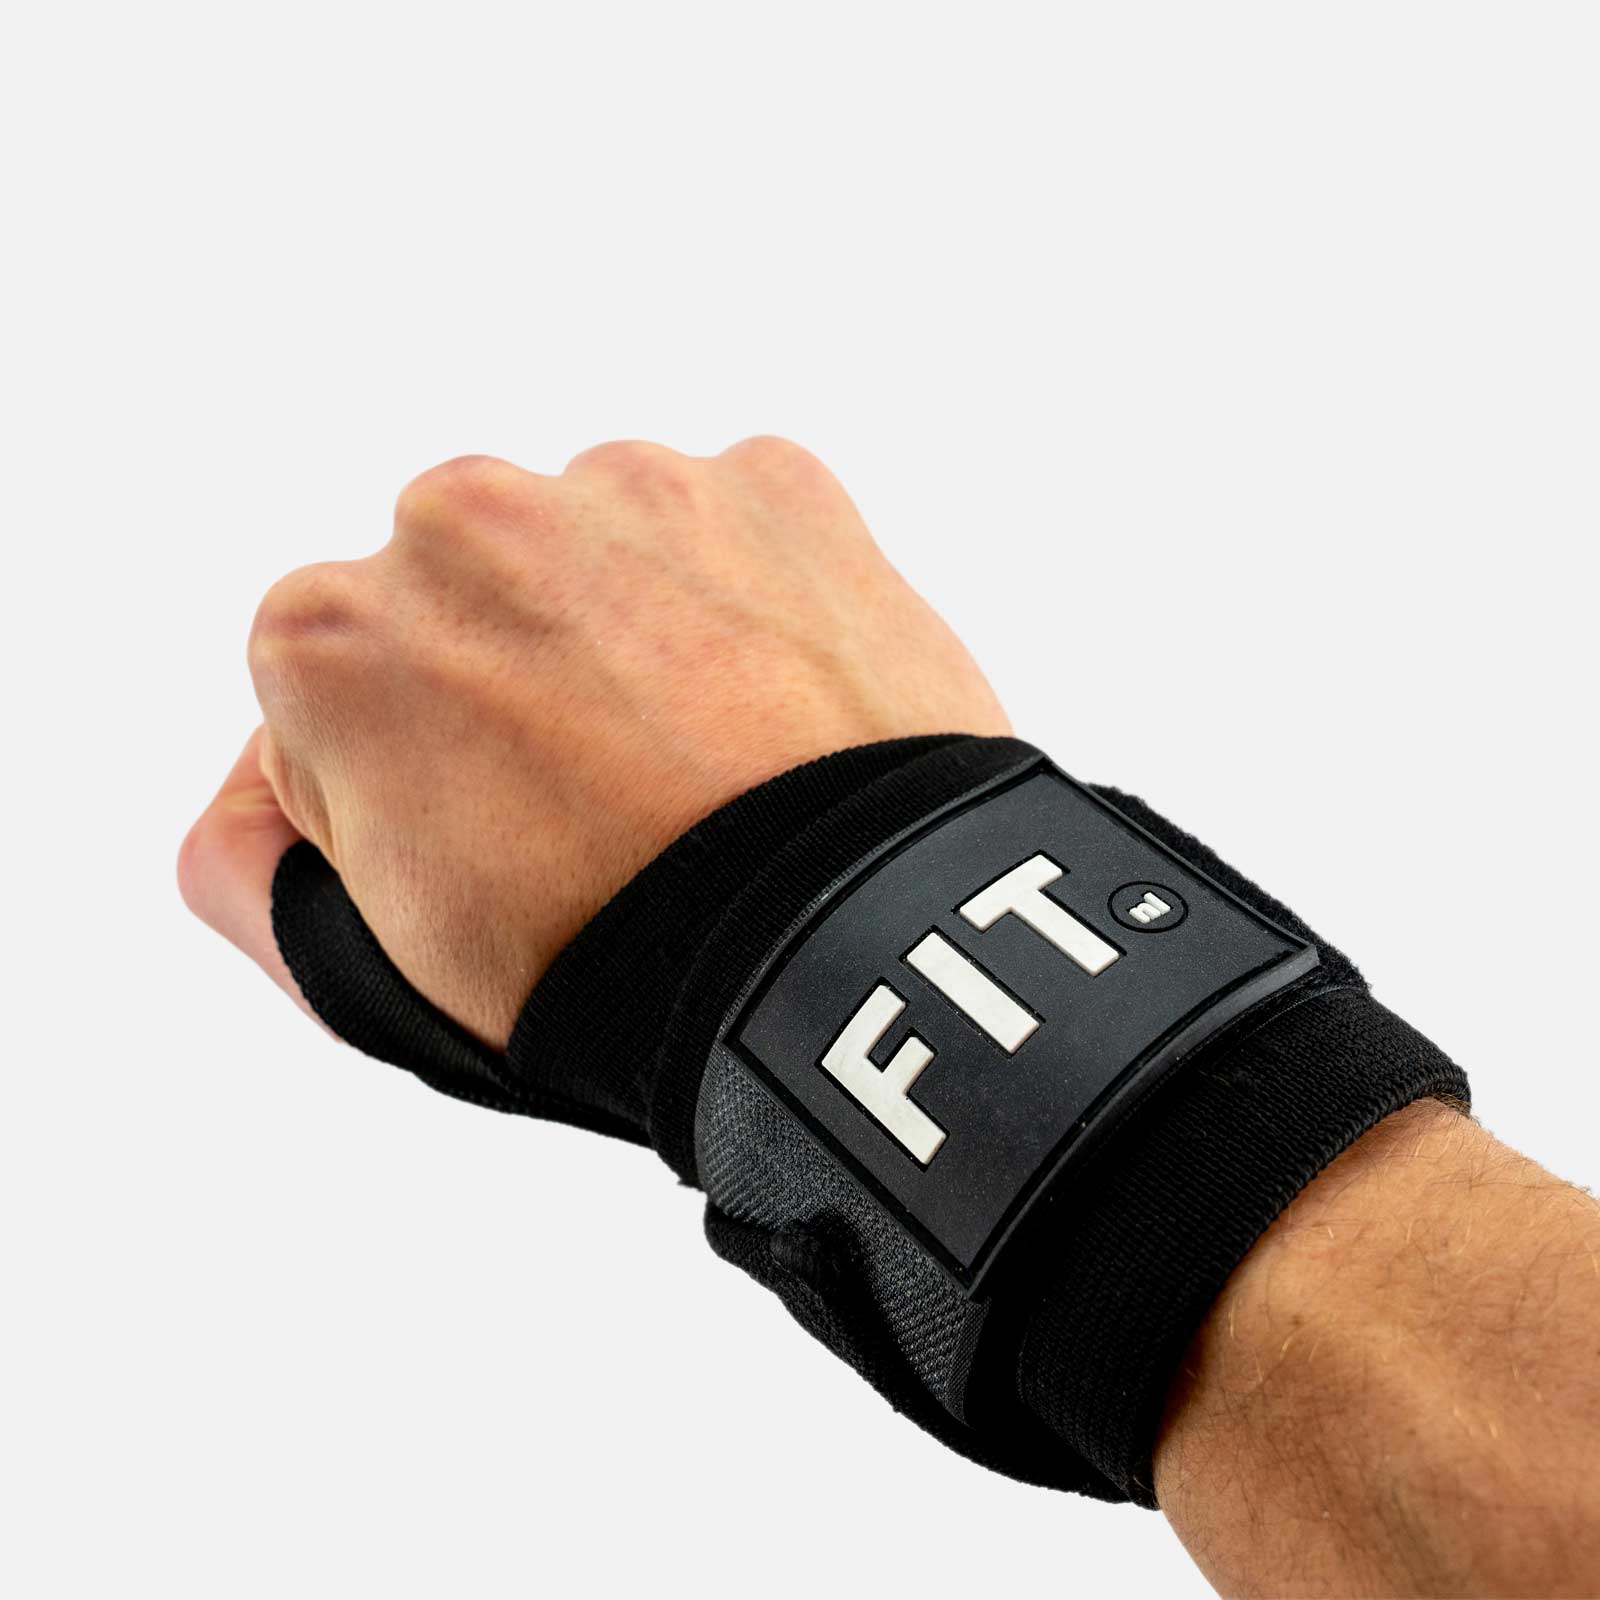 Wrist wraps voor maximale polsen | FIT.nl shop